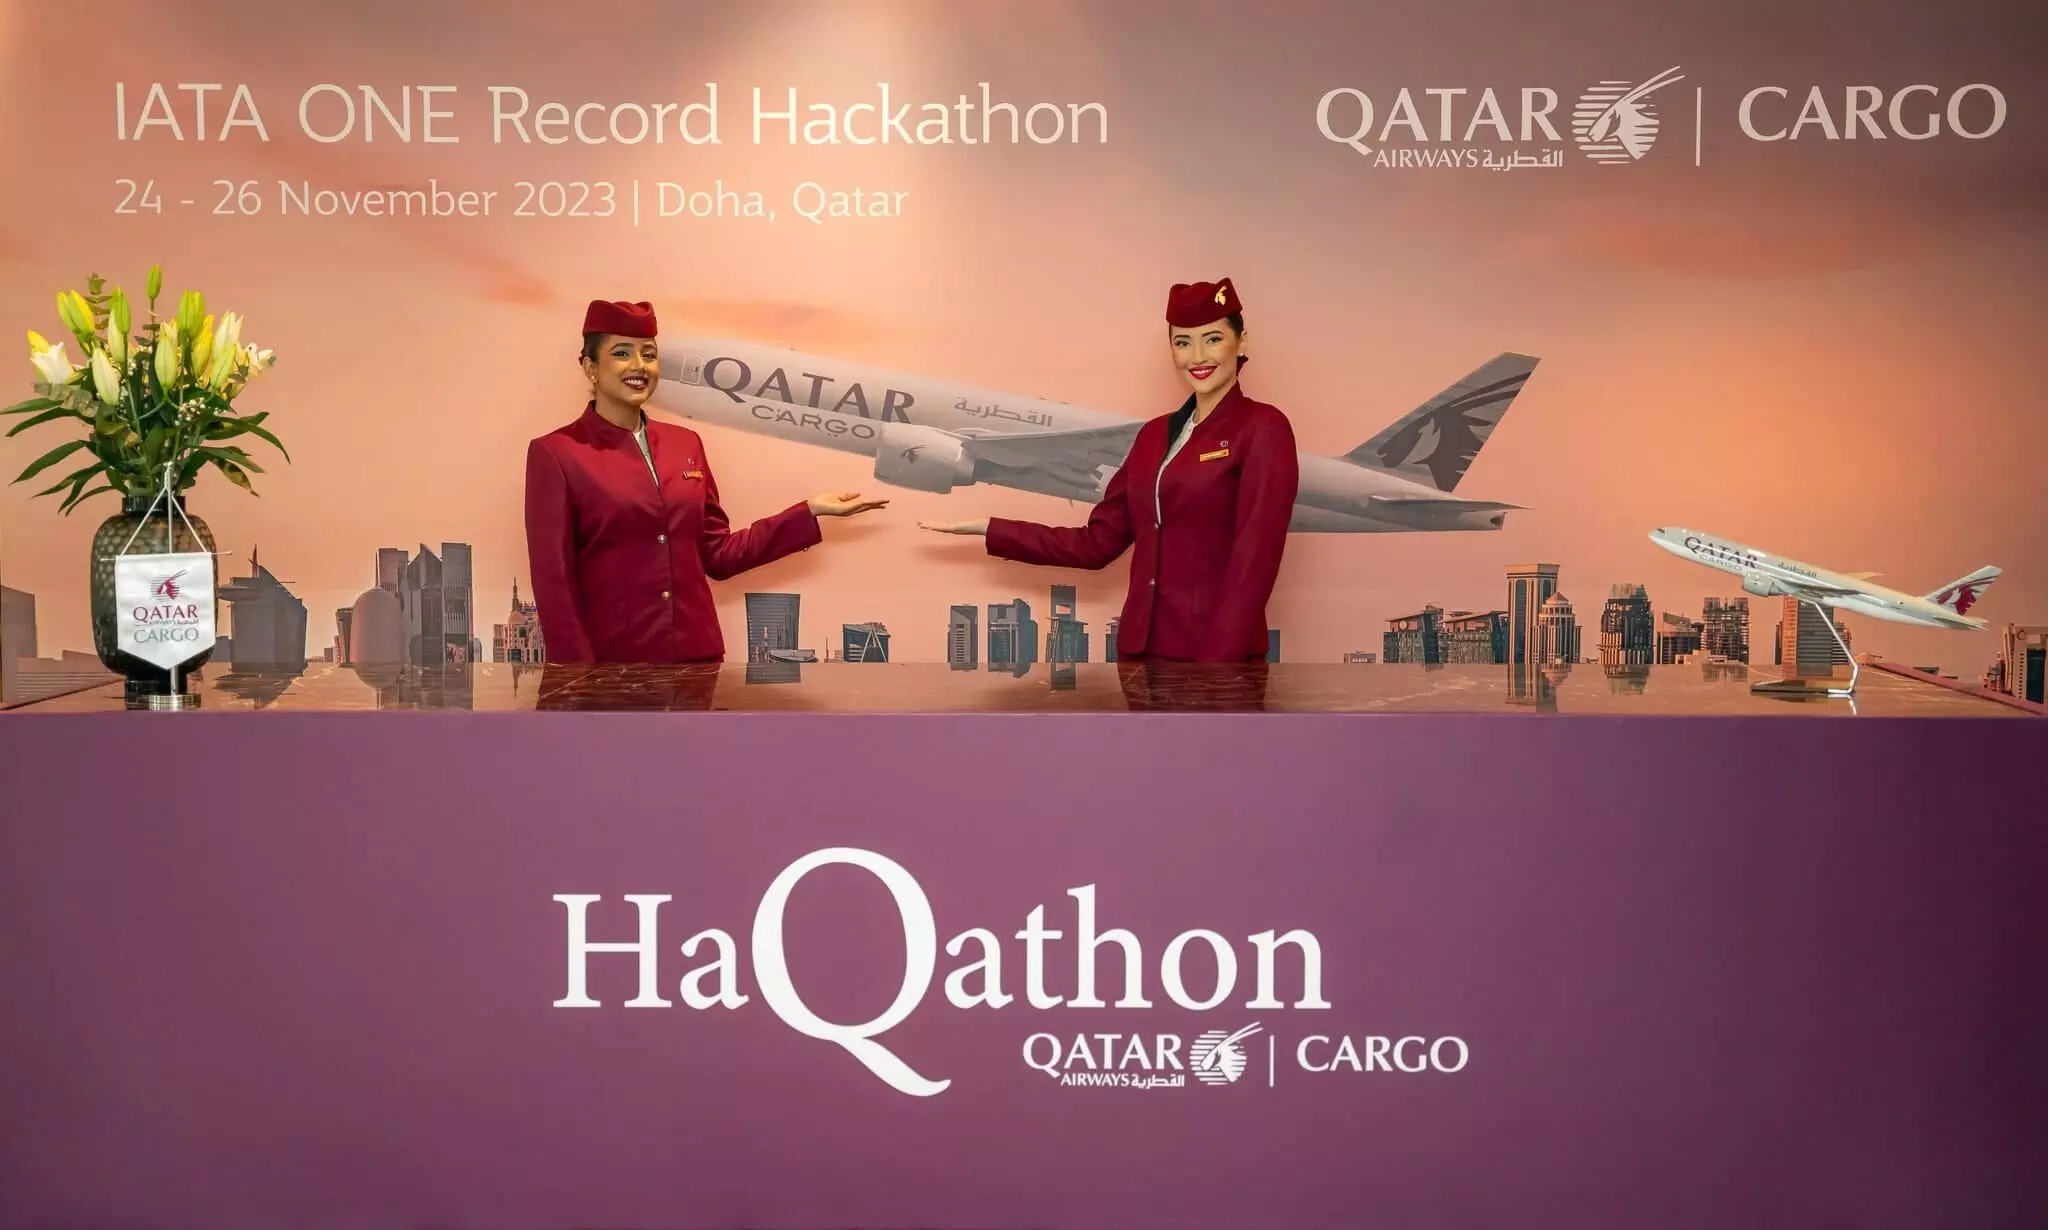 Qatar Airways Cargo, IATA conclude One Record hackathon in Qatar